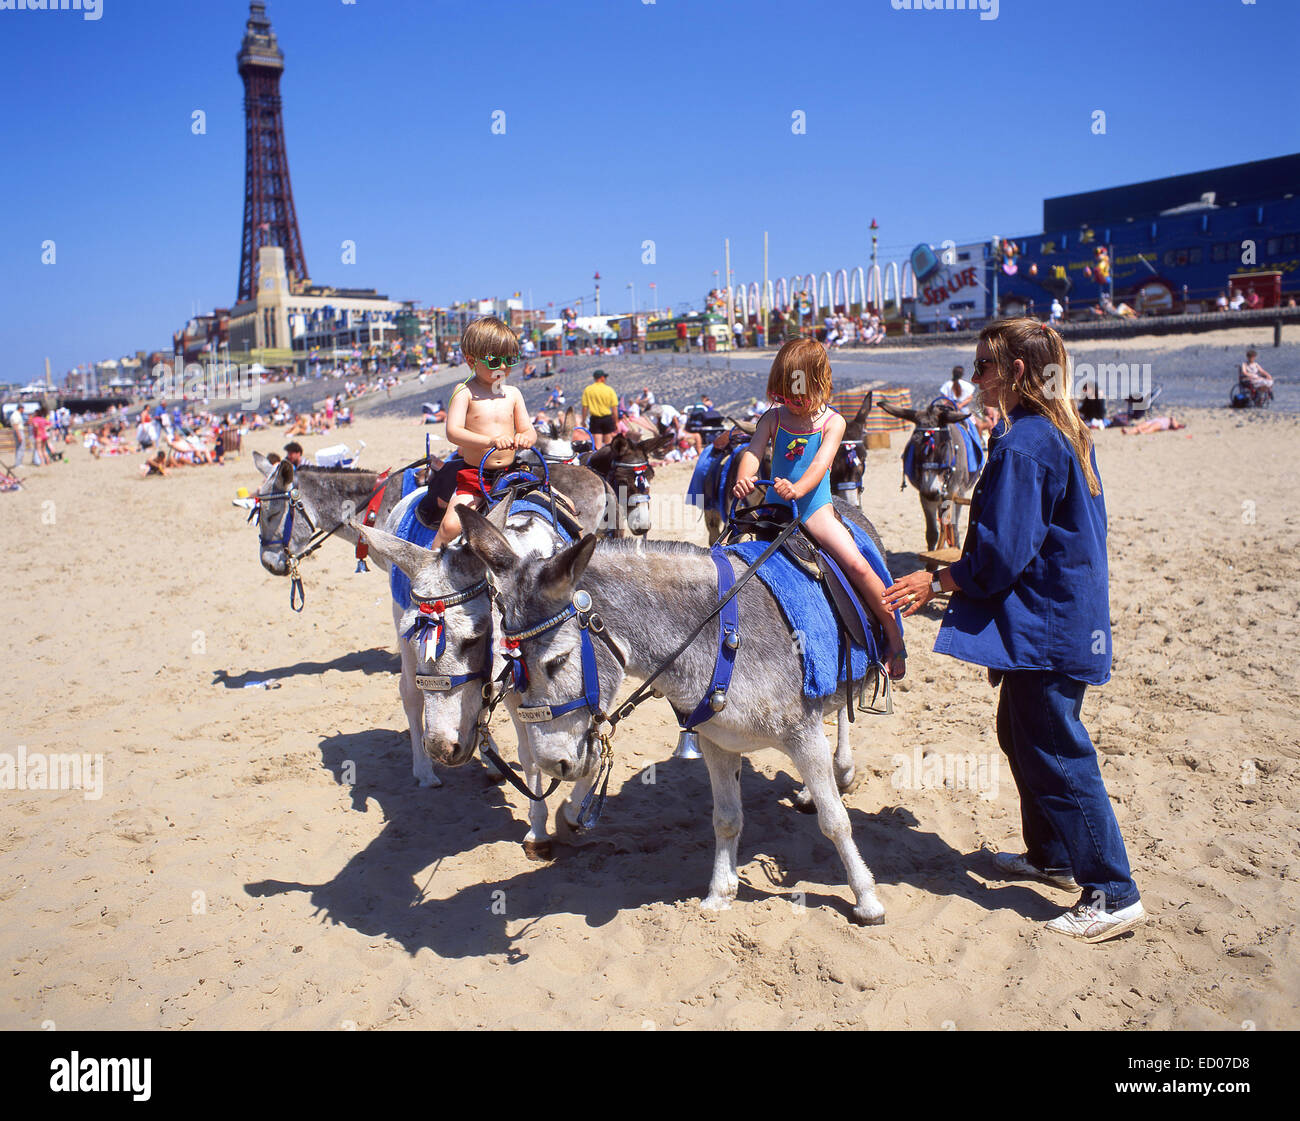 Donkey rides on Blackpool Sands, Blackpool, Lancashire, England, United Kingdom Stock Photo